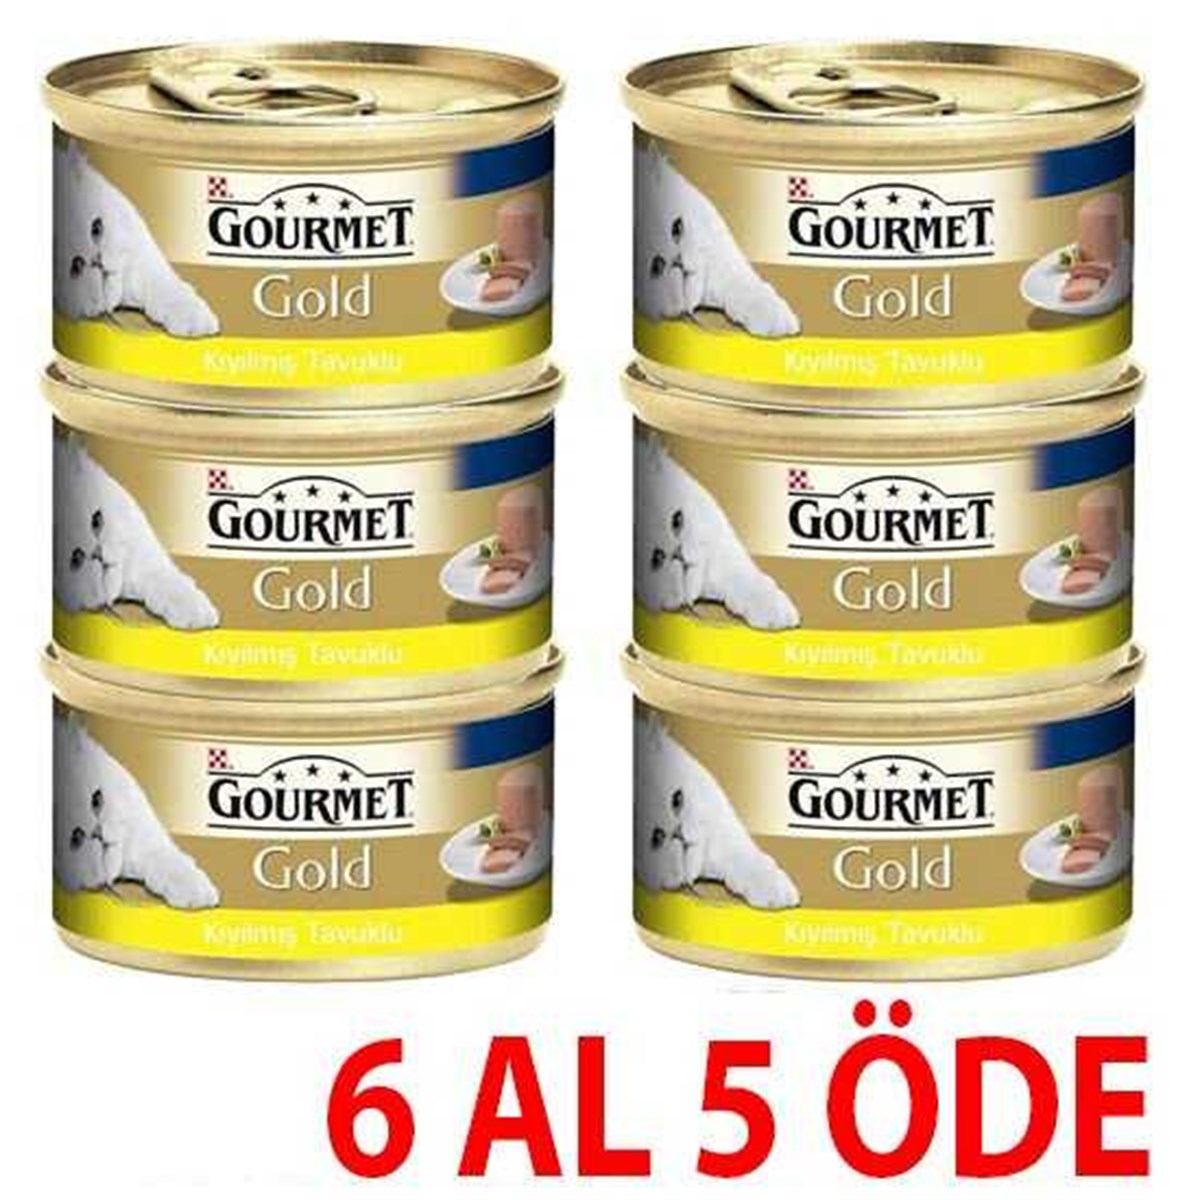 Gourmet Gold Kıyılmış Tavuklu Yetişkin Kedi Konservesi 85 Gr (6 Al 5 Öde) |  Hepsipatili.com